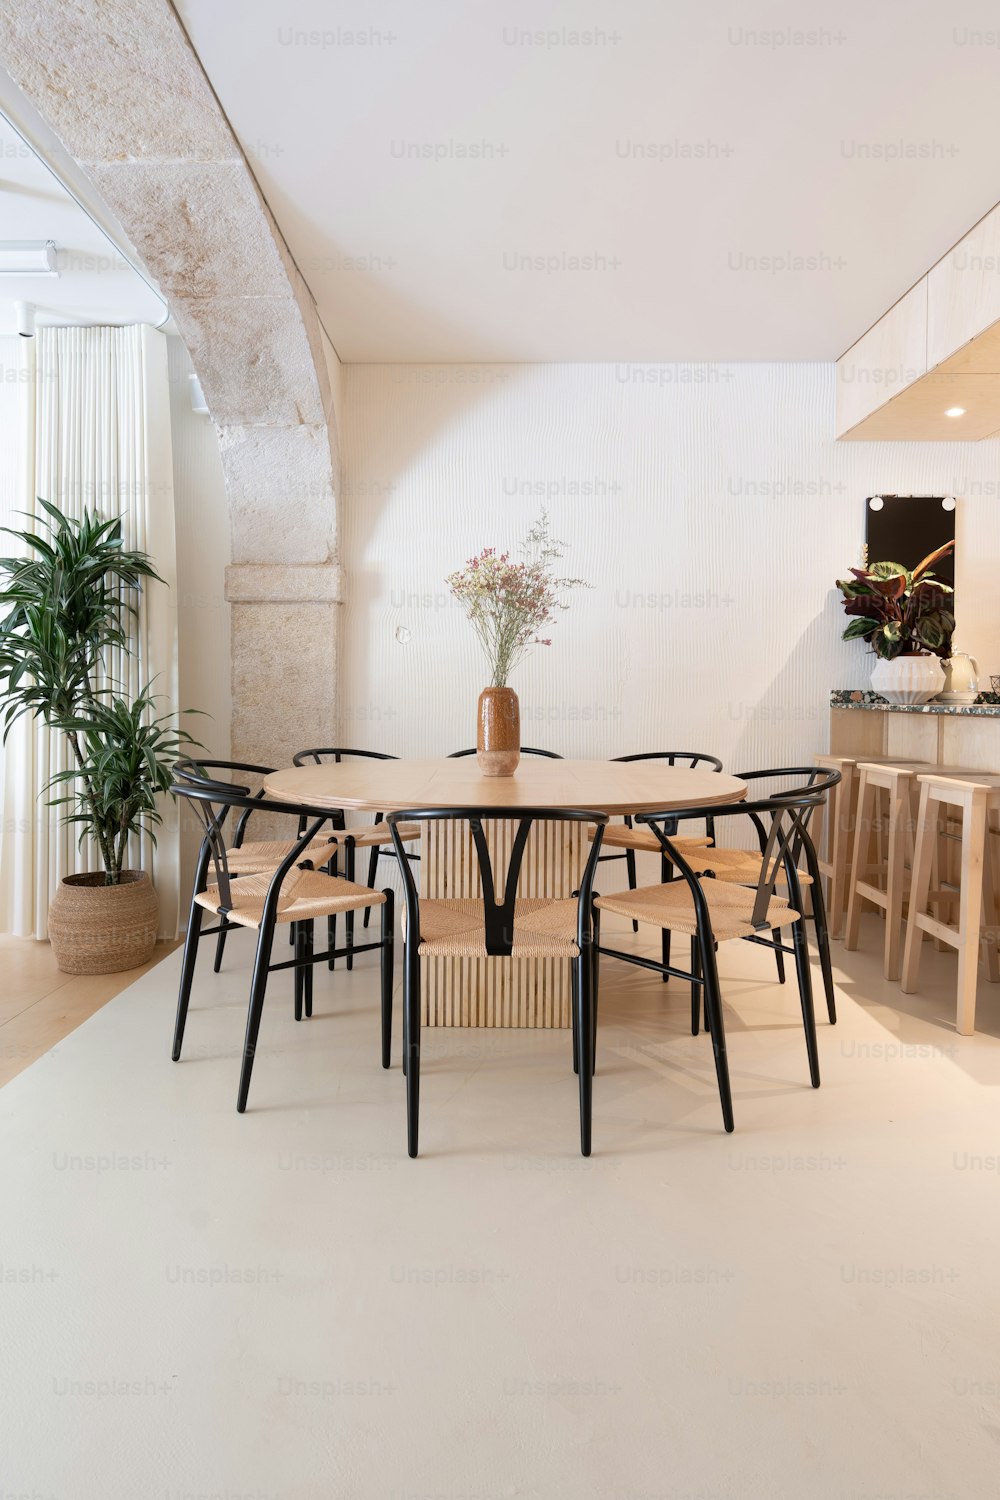 una habitación con una mesa y sillas y una planta en maceta